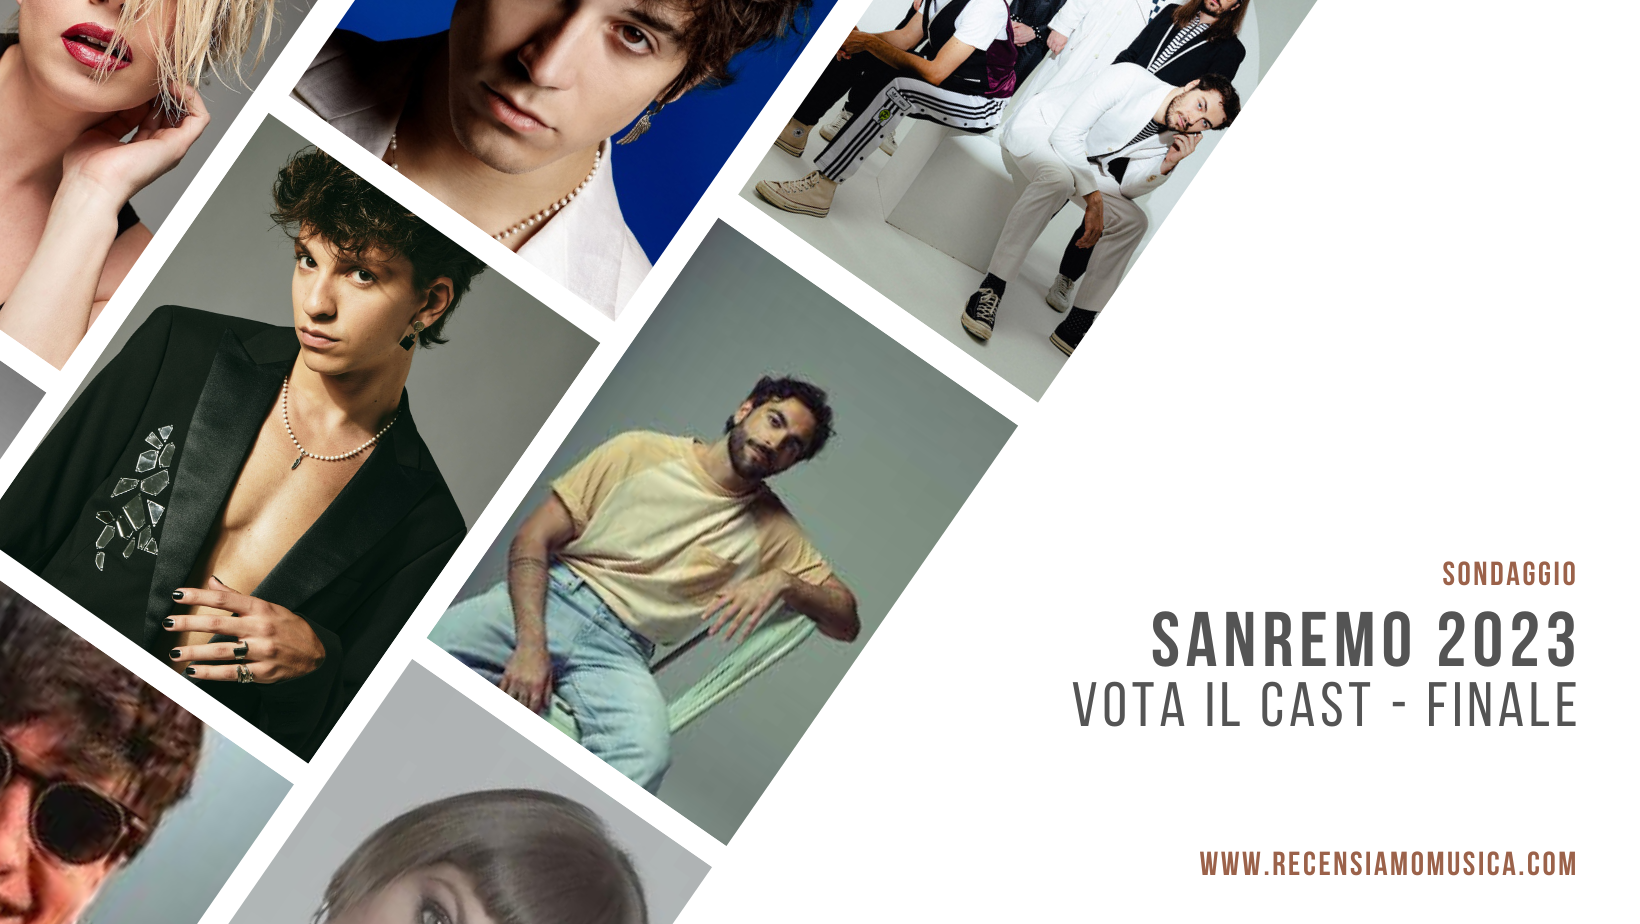 Sanremo 2023 - cast - sondaggio finale